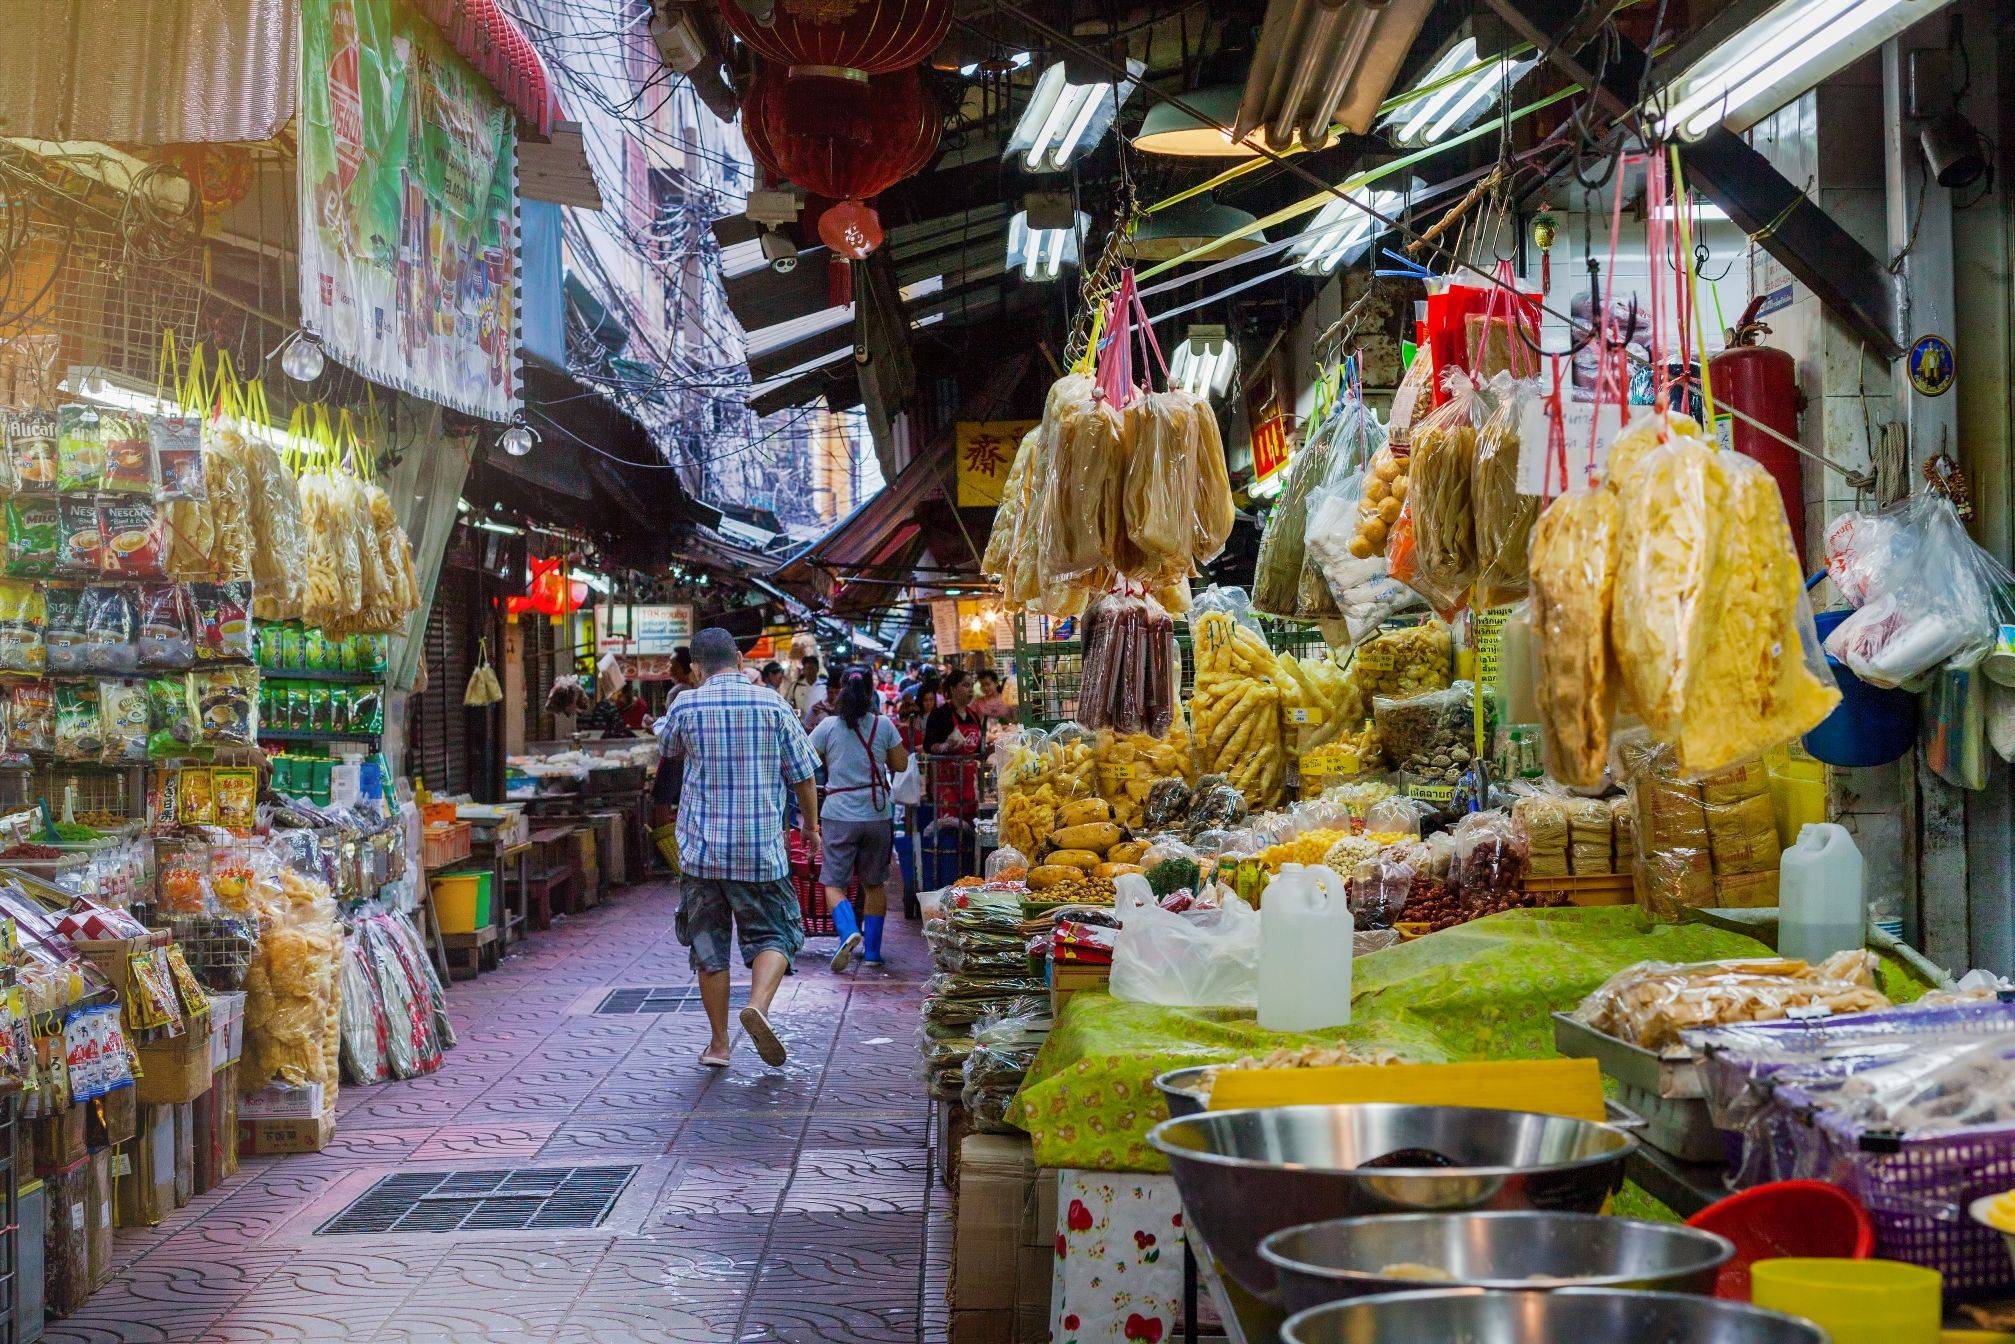 Radtour durch die bunten Märkte Chinatowns